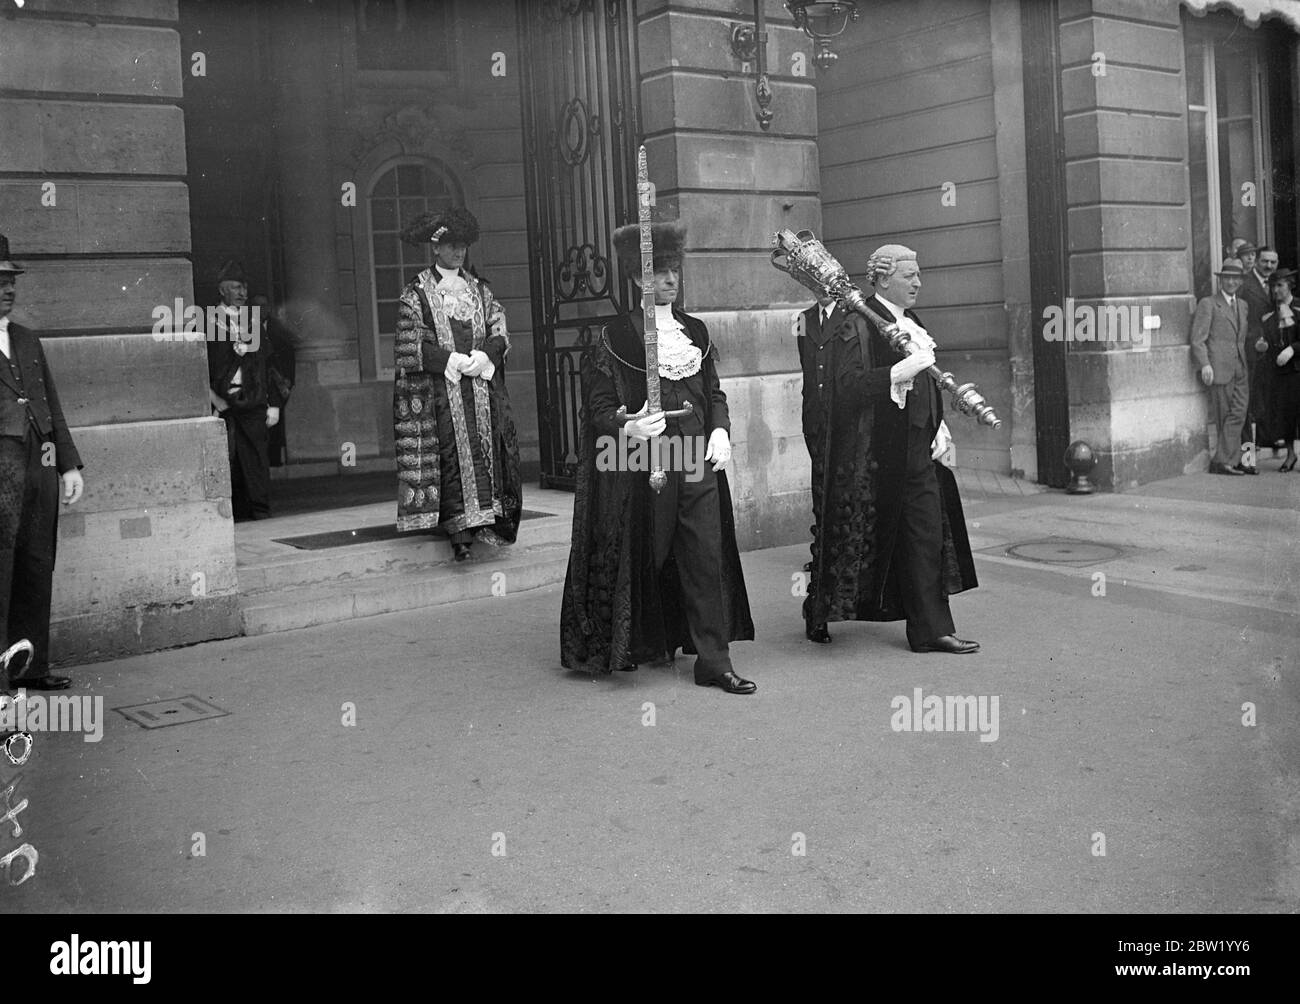 Lord Mayor of London, Sir George Broadbridge, visite spéciale à Paris pour ouvrir le pavillon britannique. Photos: Lord Mayor quittant l'hôtel Ritz avec le Sword Bearer et le Crier commun / Mace Bearer] 18 juin 1937 Banque D'Images